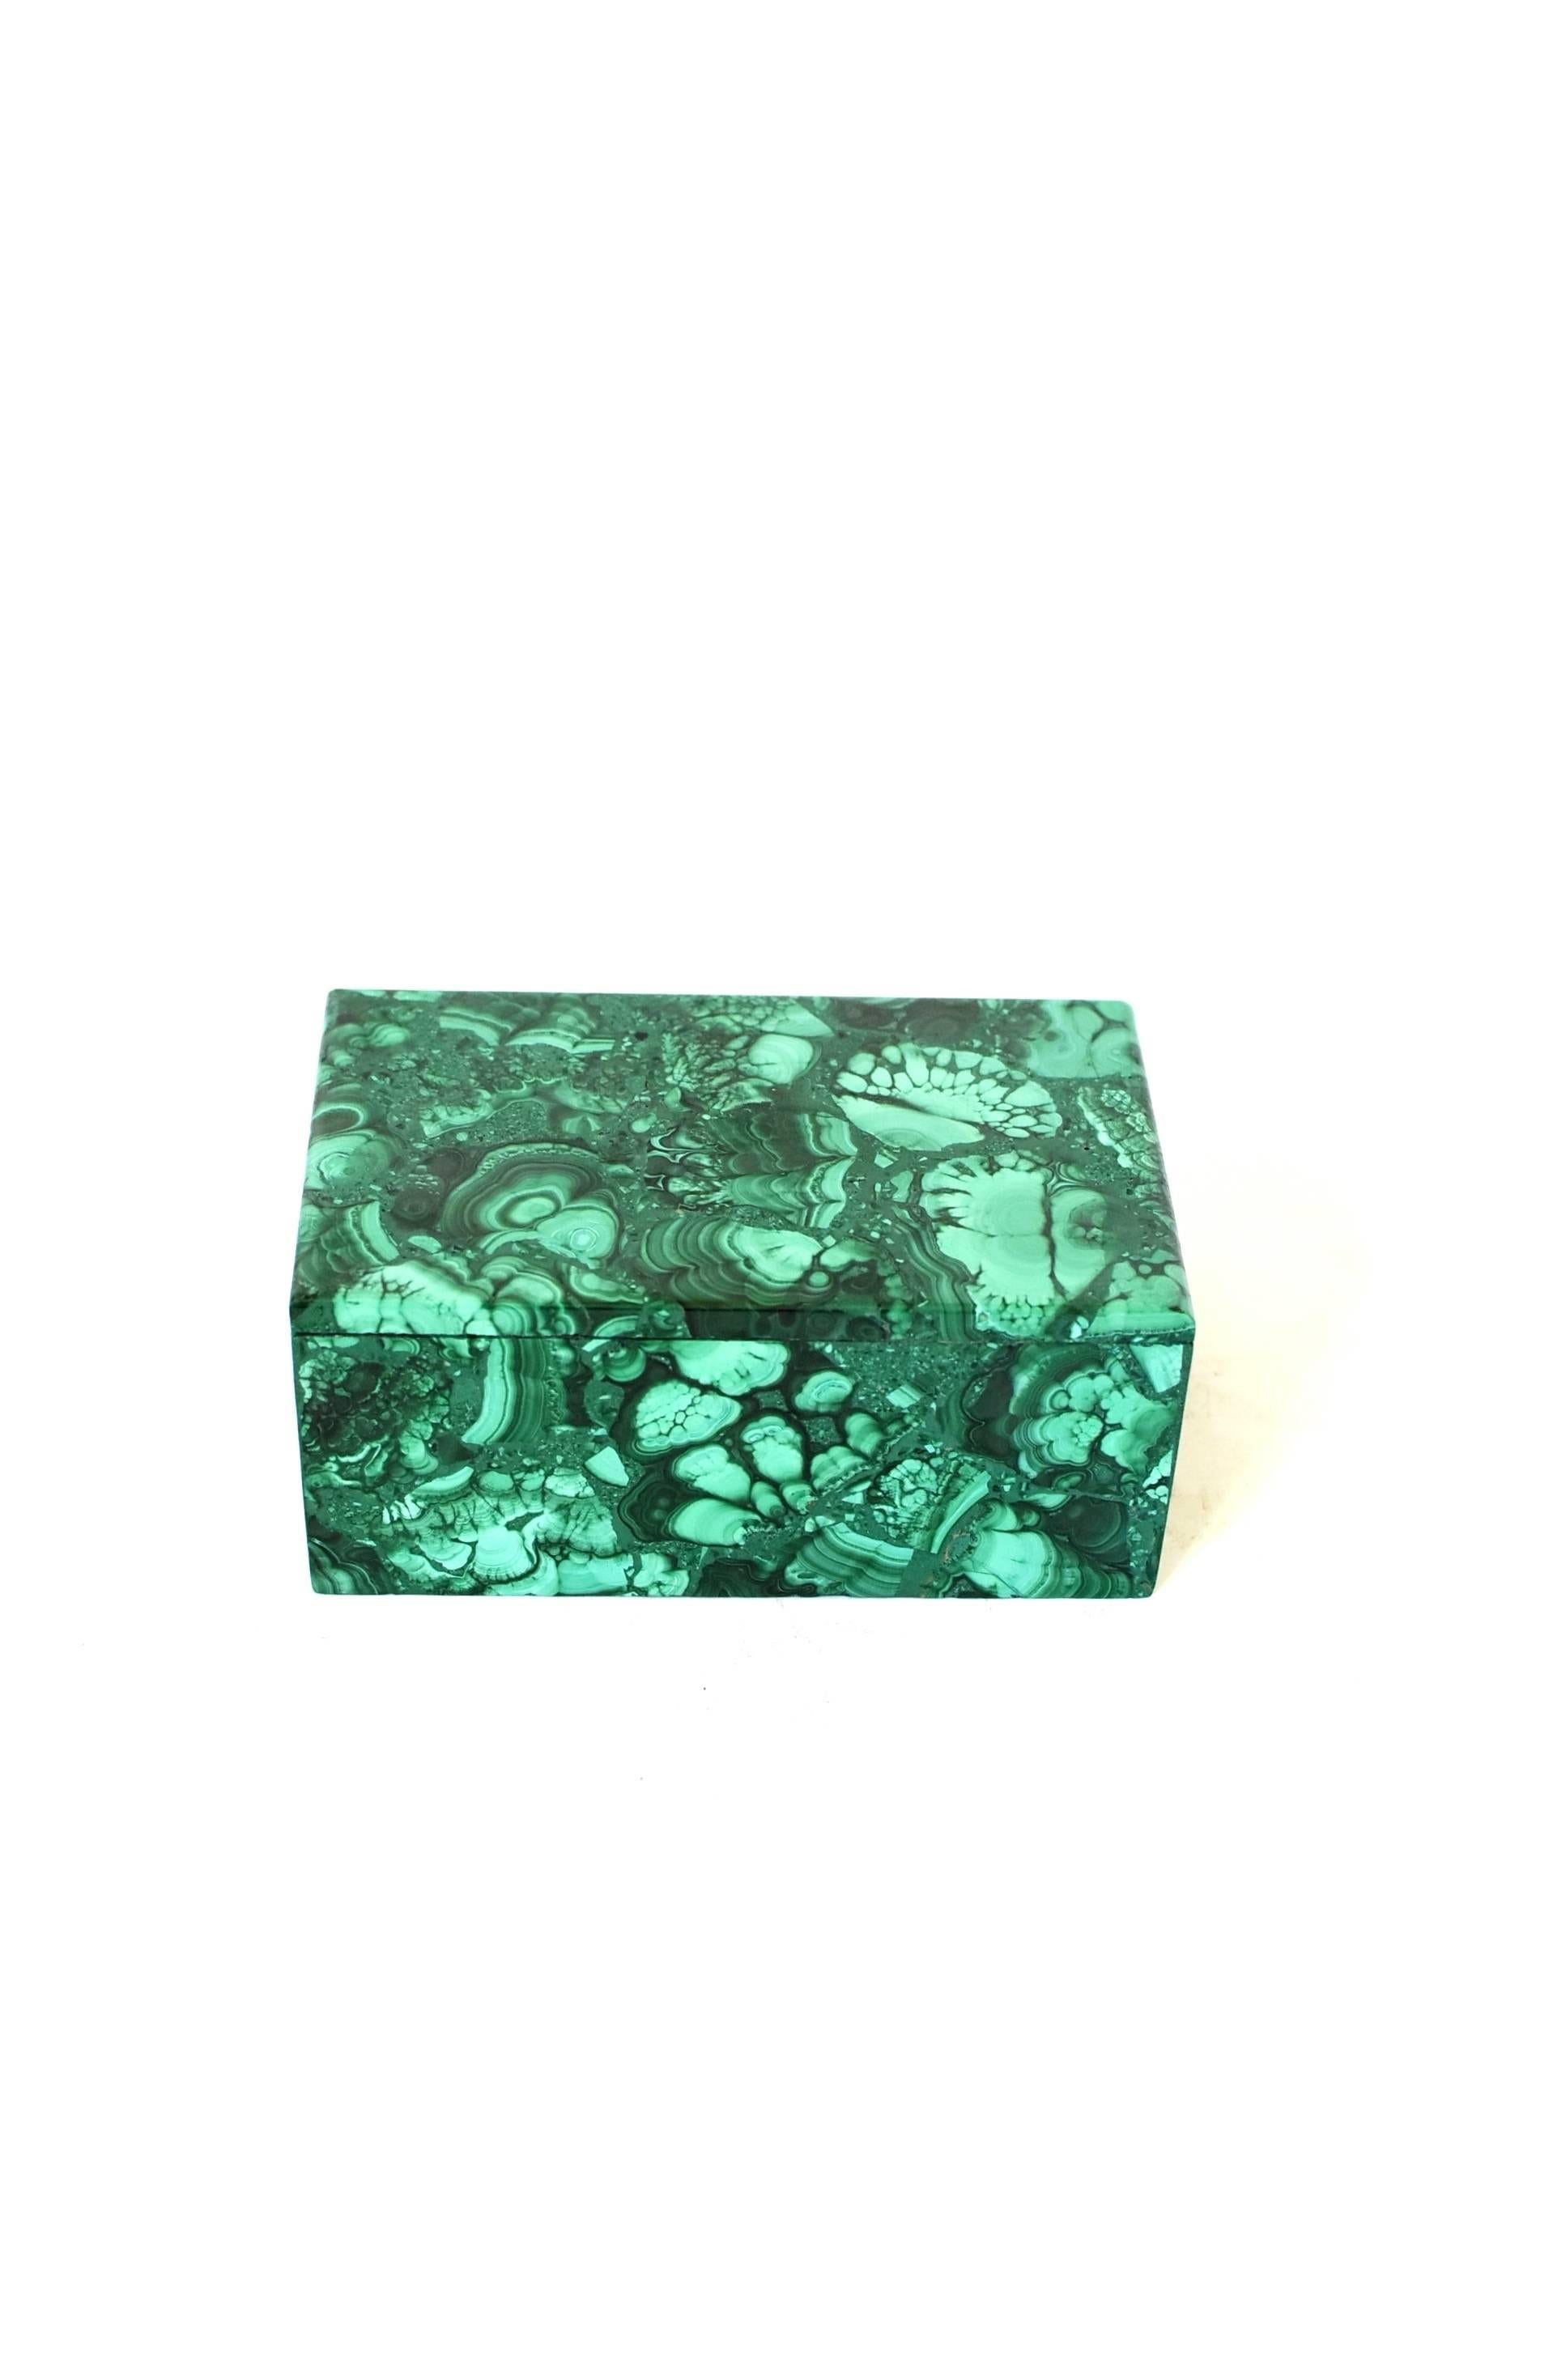 Malagasy Large Natural Malachite Box, Gem Stone Jewelry Box